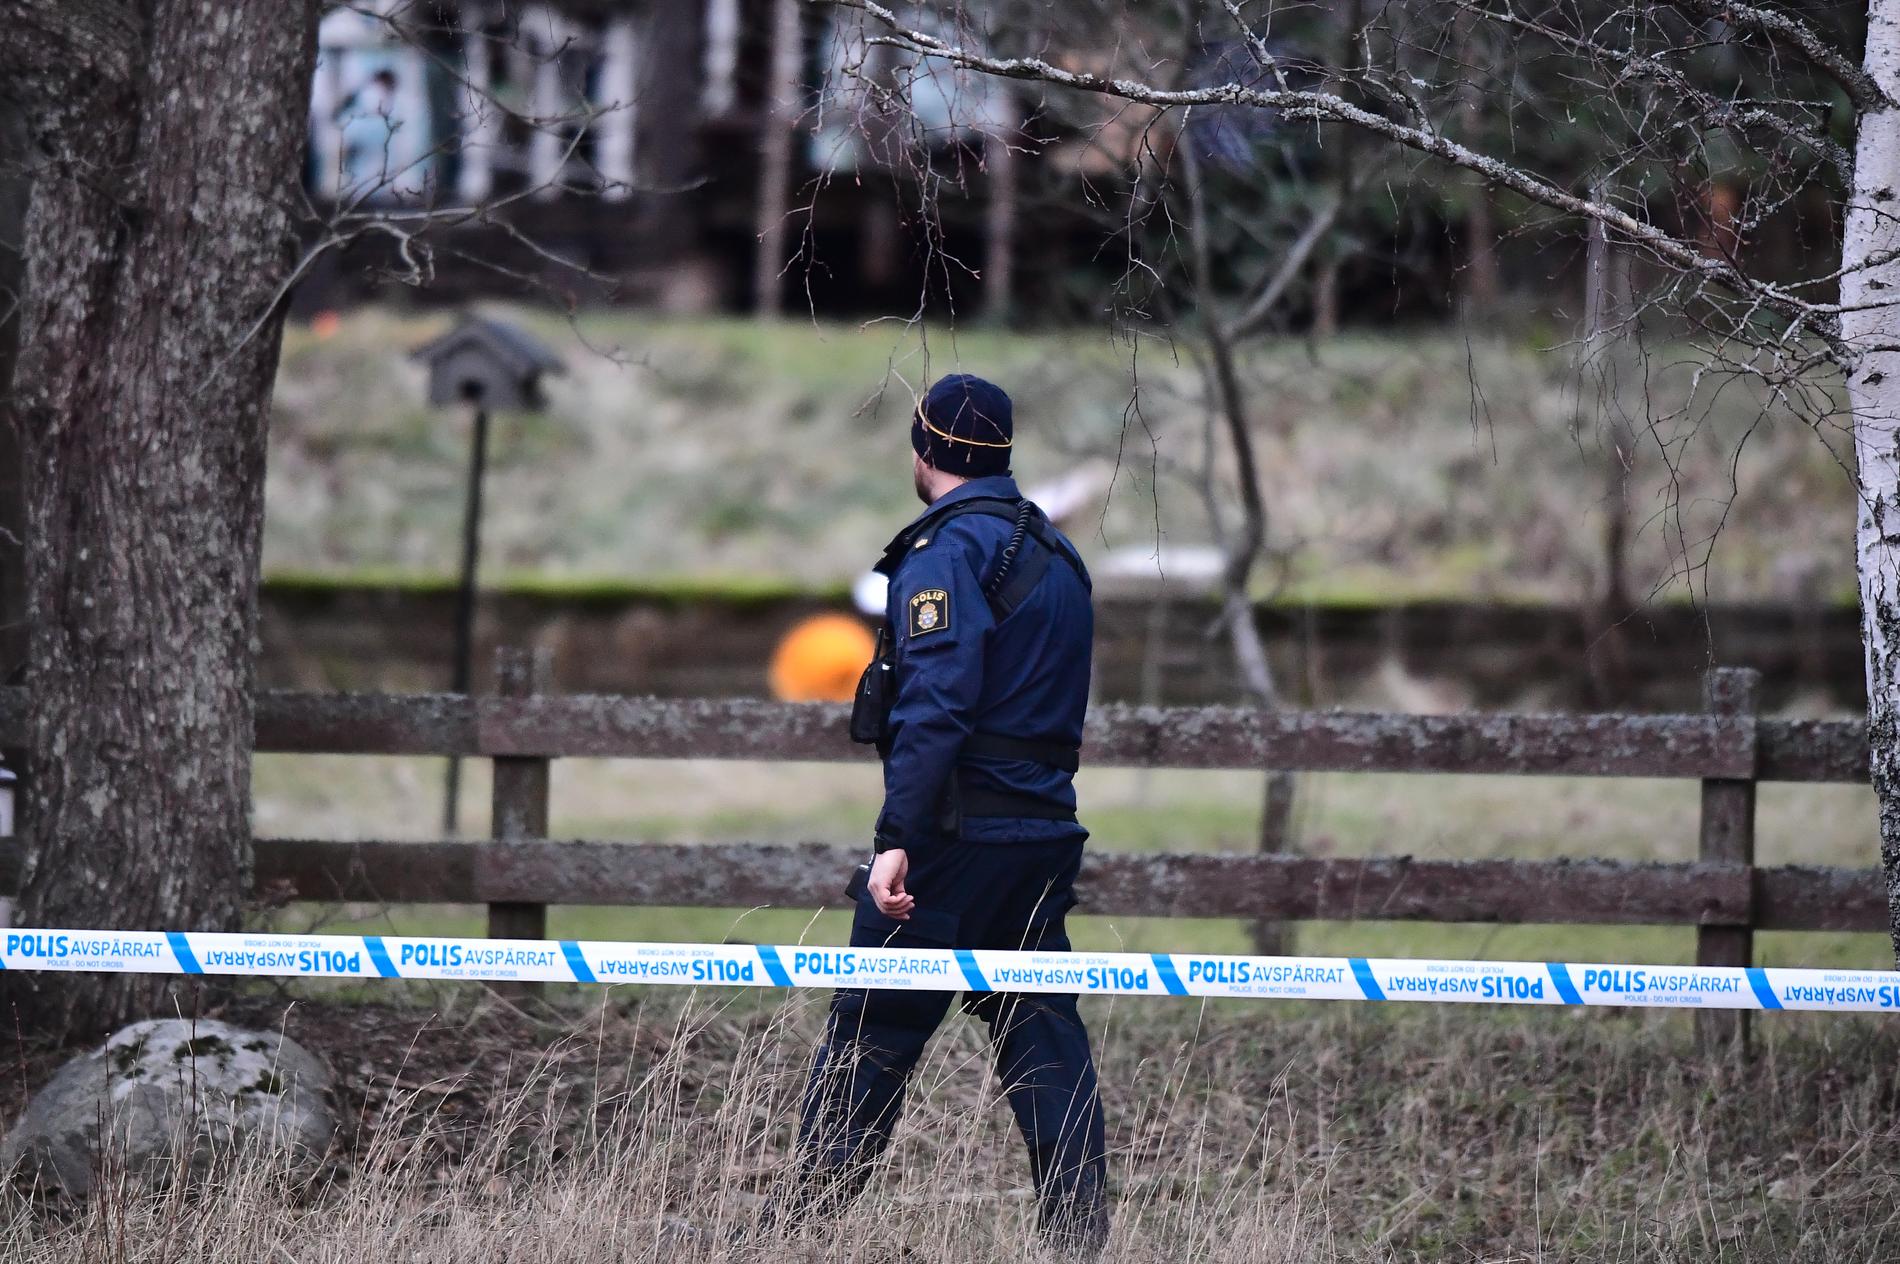 Två personer har hittats döda i en villa i Vallentuna norr om Stockholm. Kropparna upptäcktes när polisen letade efter en försvunnen person. 